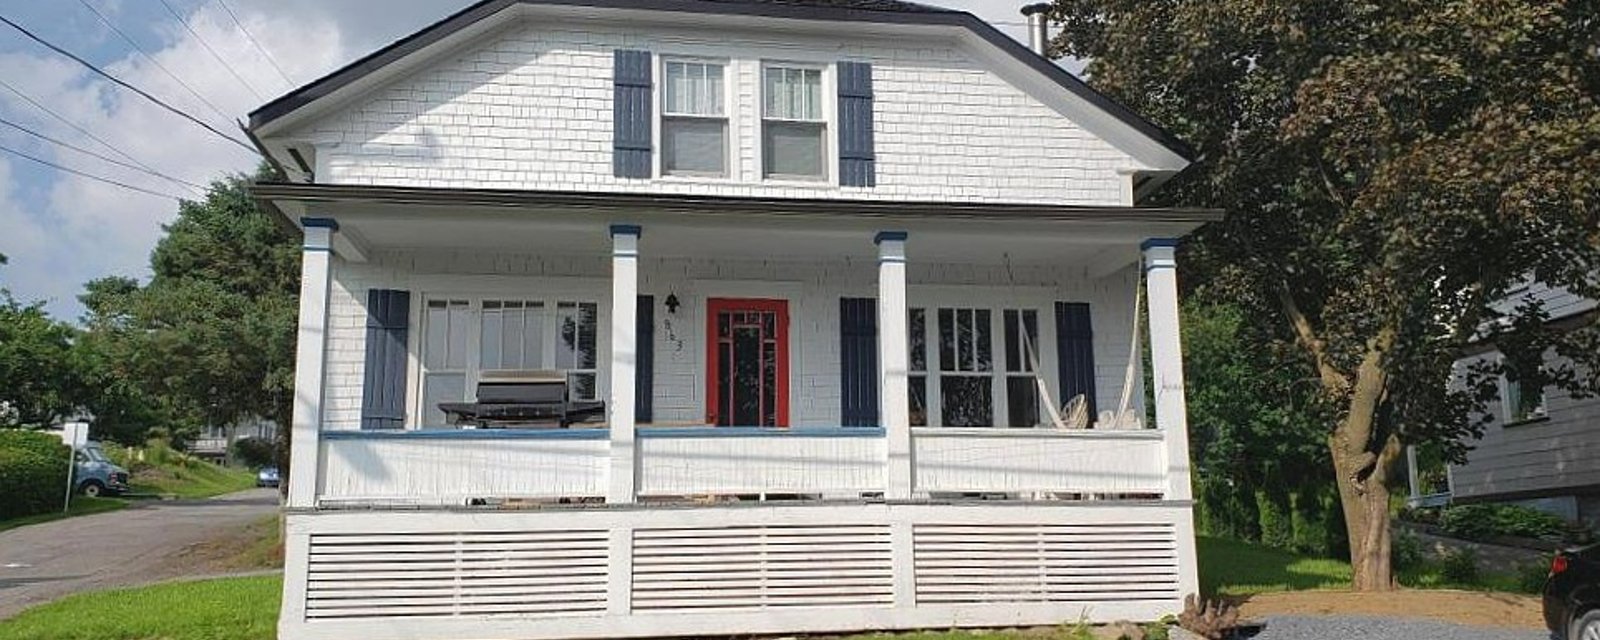 Coquette maison de 3 chambres aux chaleureux planchers en bois à vendre pour 179 500$